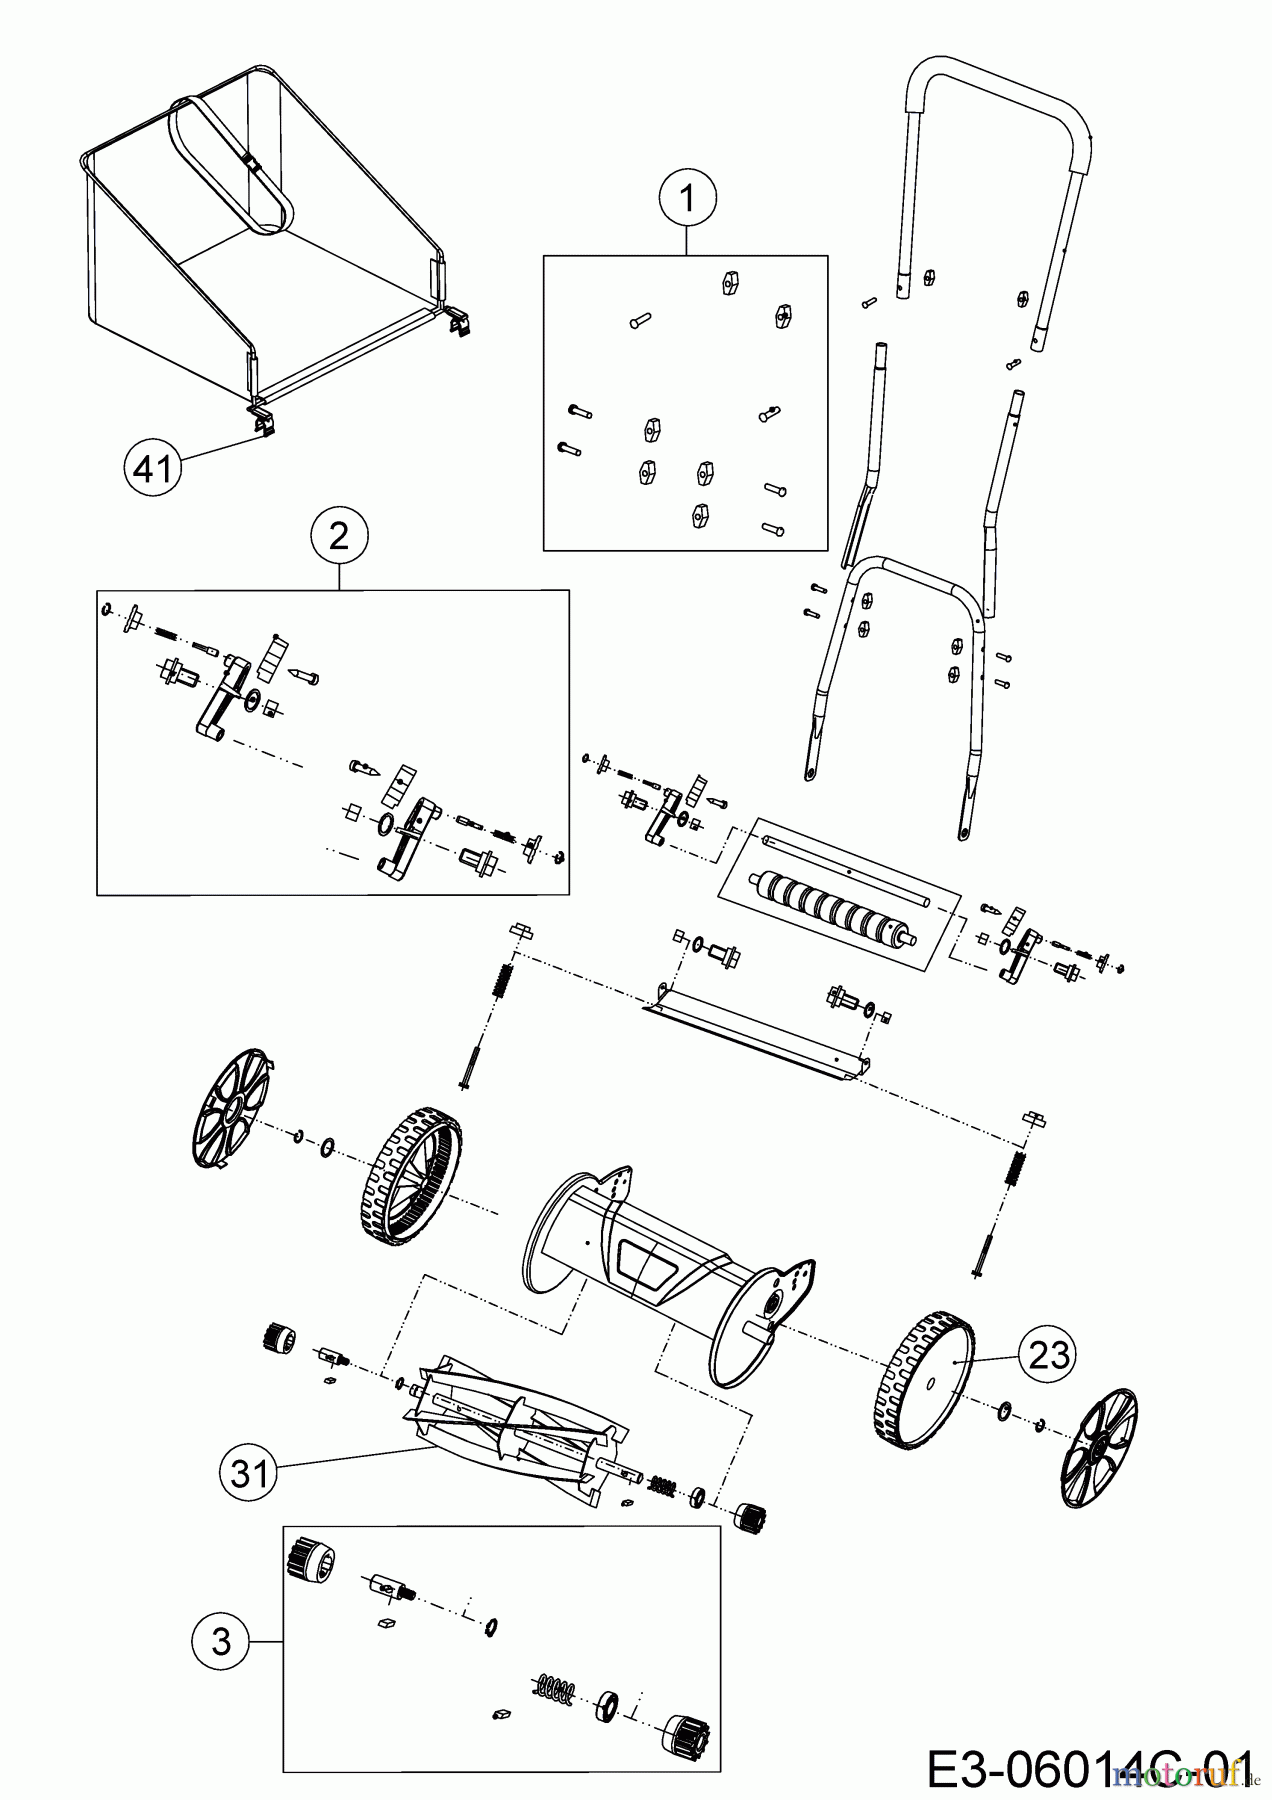  Wolf-Garten Spindle mower TT 350 S 15B-BA--650  (2017) Basic machine